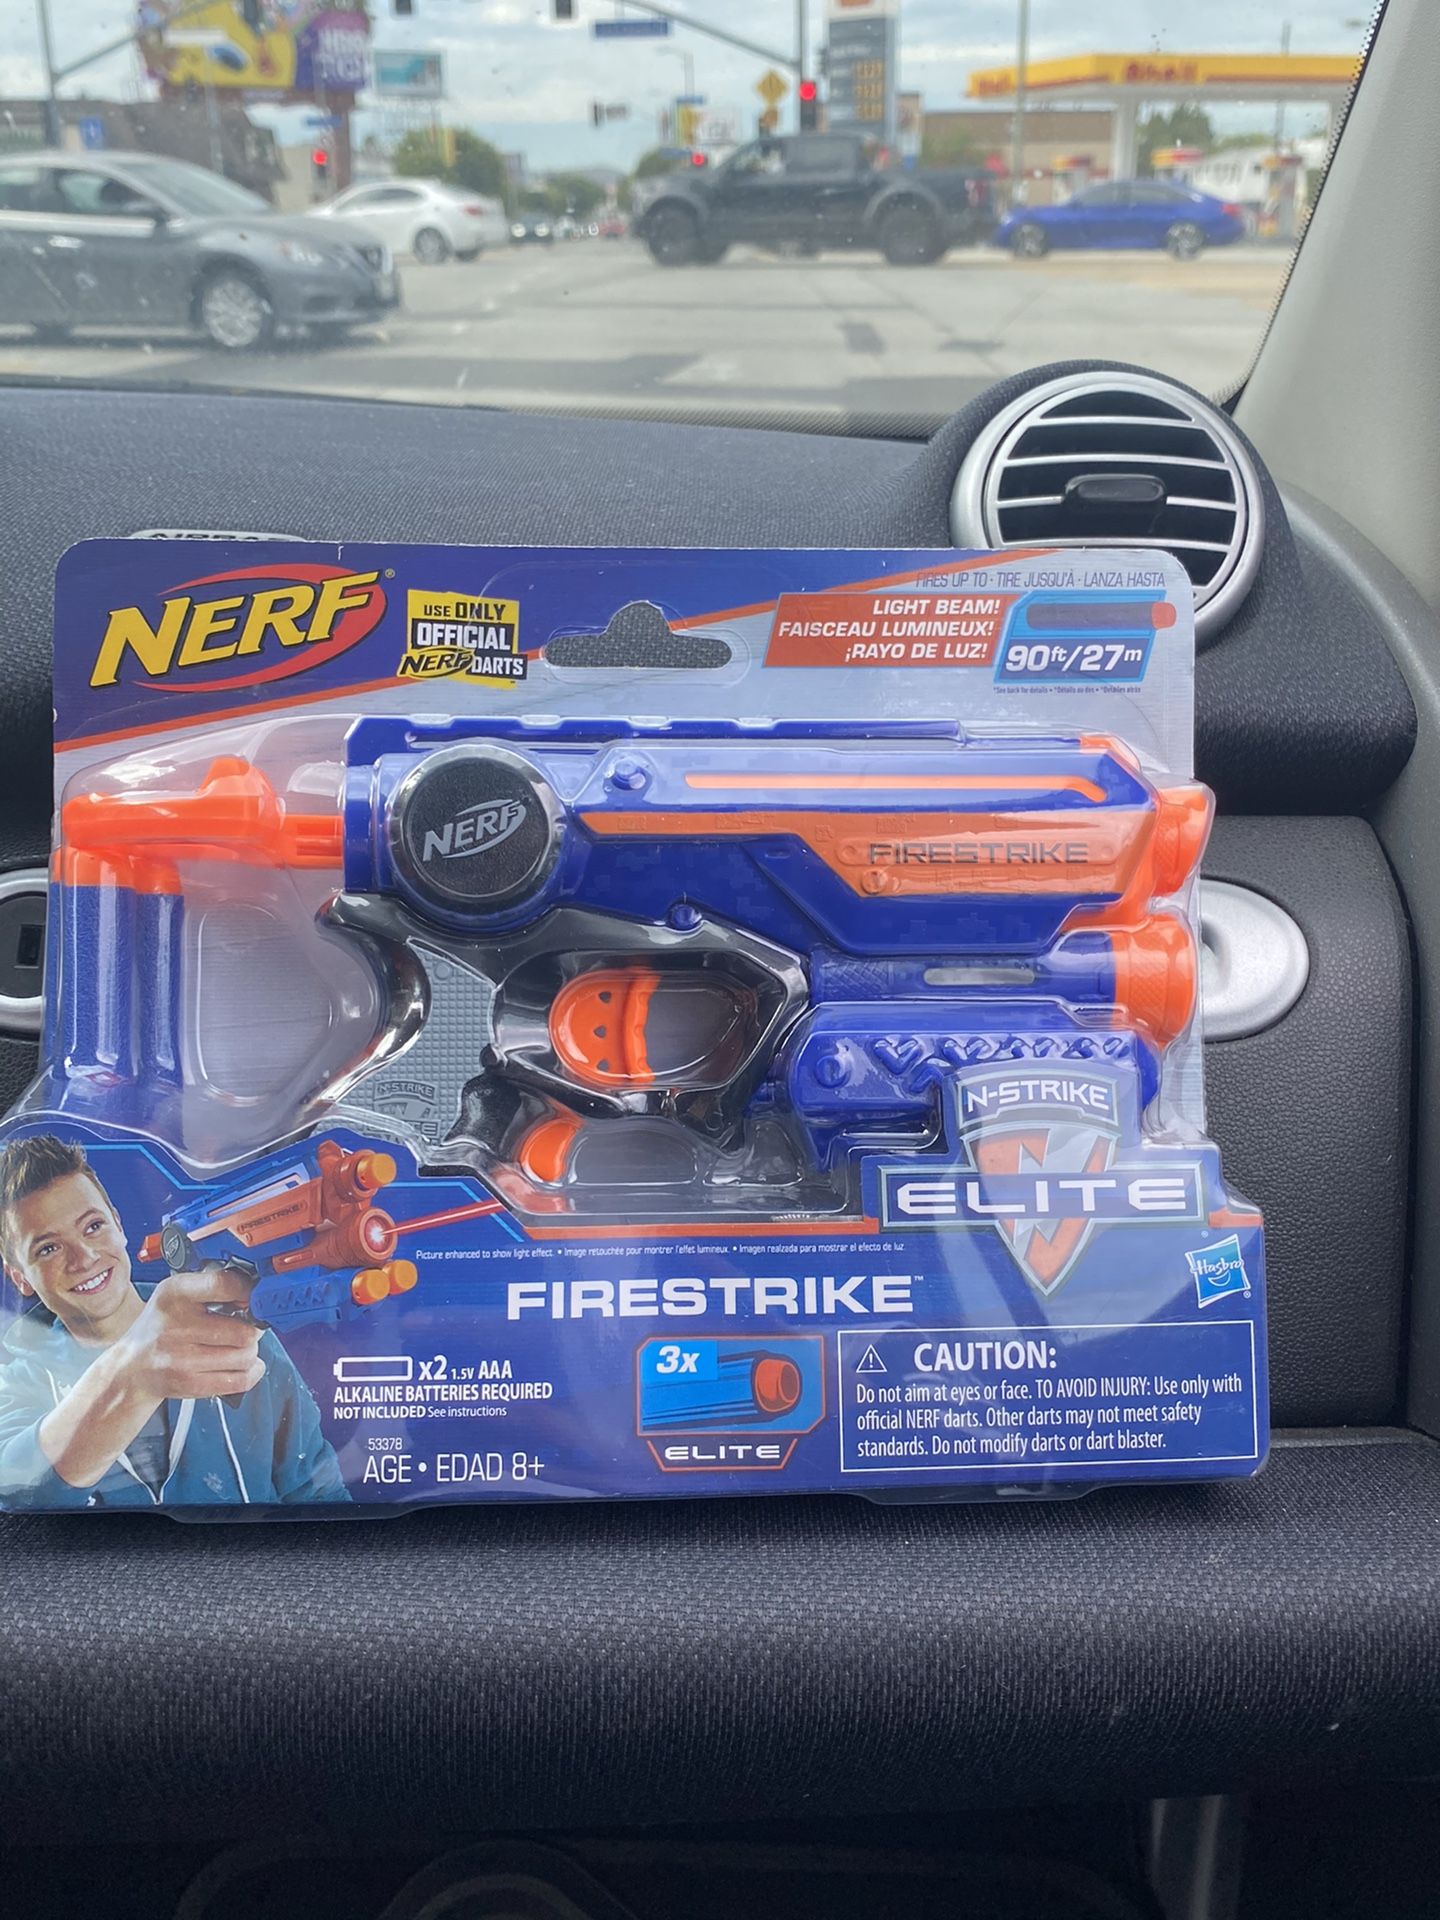 Nerf gun fire strike